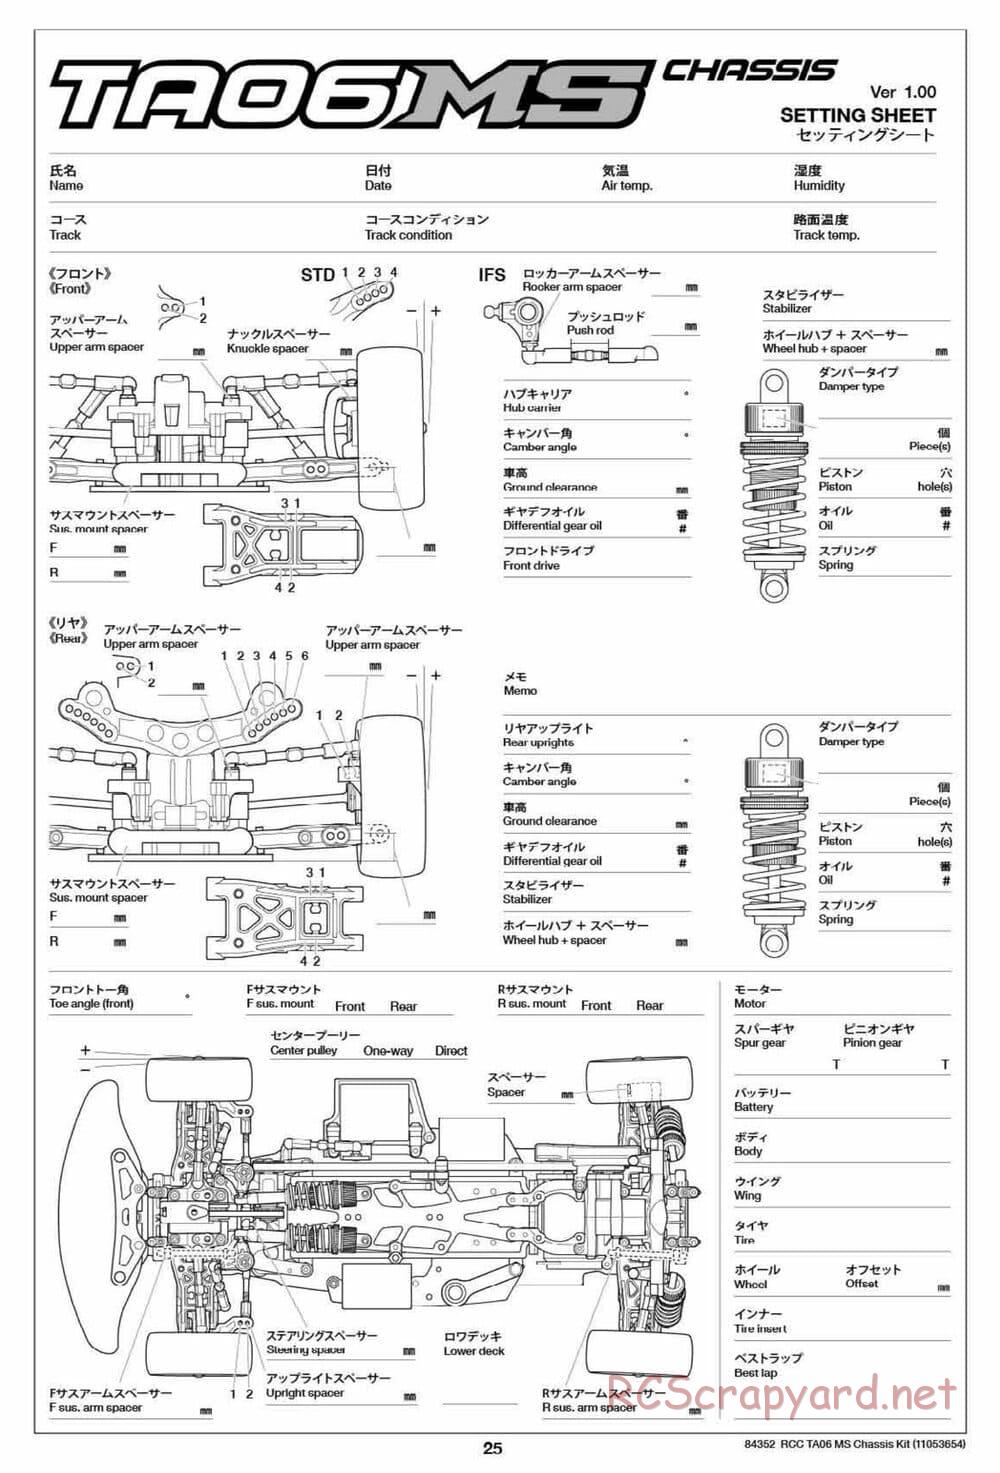 Tamiya - TA06 MS Chassis - Manual - Page 25